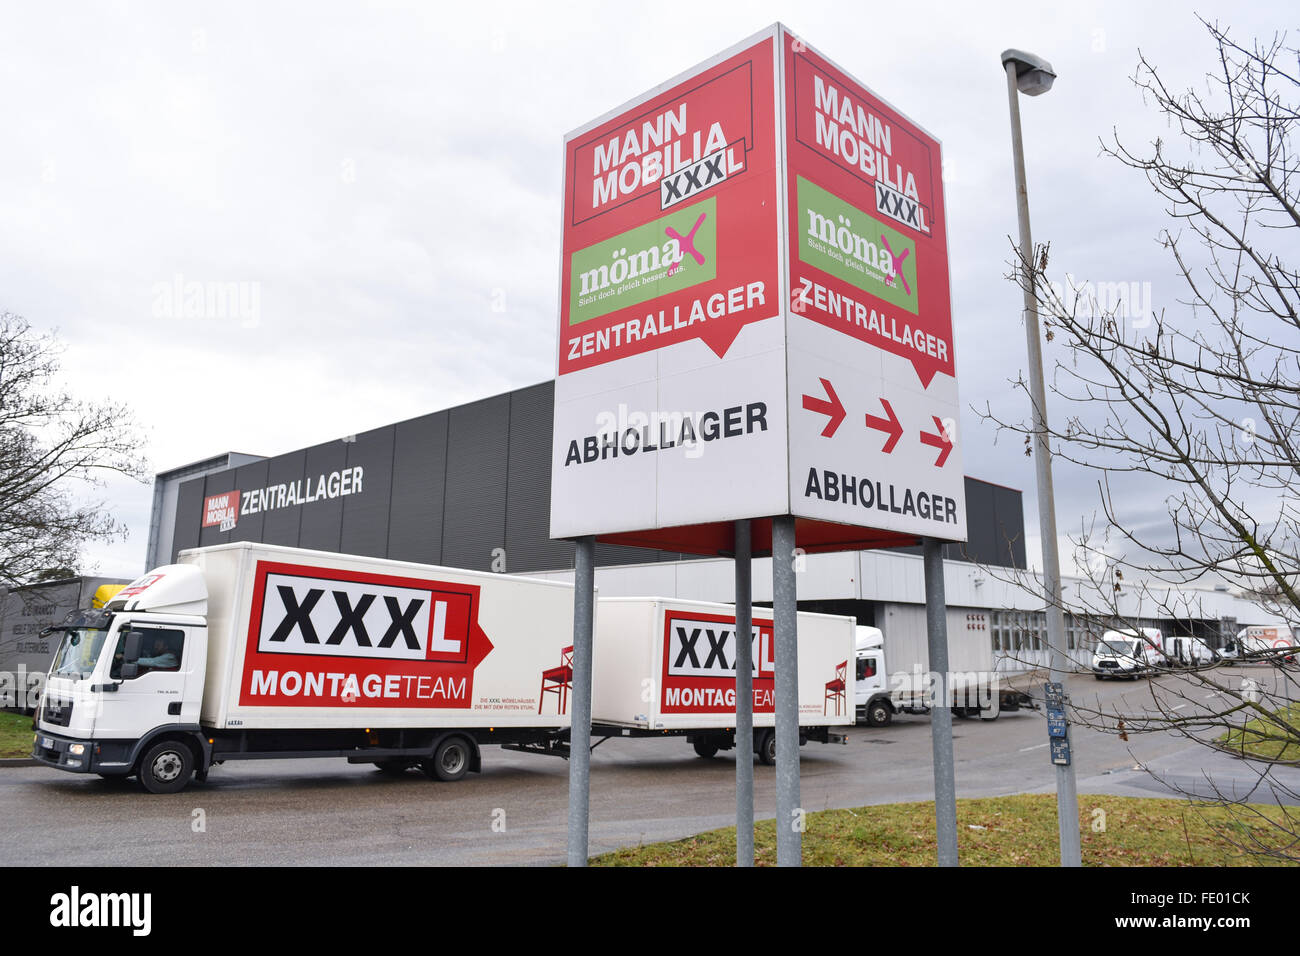 Un camion quitte l'entrepôt central de le magasin de meubles 'Mann Mobilia' à Mannheim, Allemagne, 03 février 2016. Les employés de l'un des magasins de meubles Mobilia Mann protestent contre leur licenciement soudain. Photo : UWE ANSPACH/dpa Banque D'Images